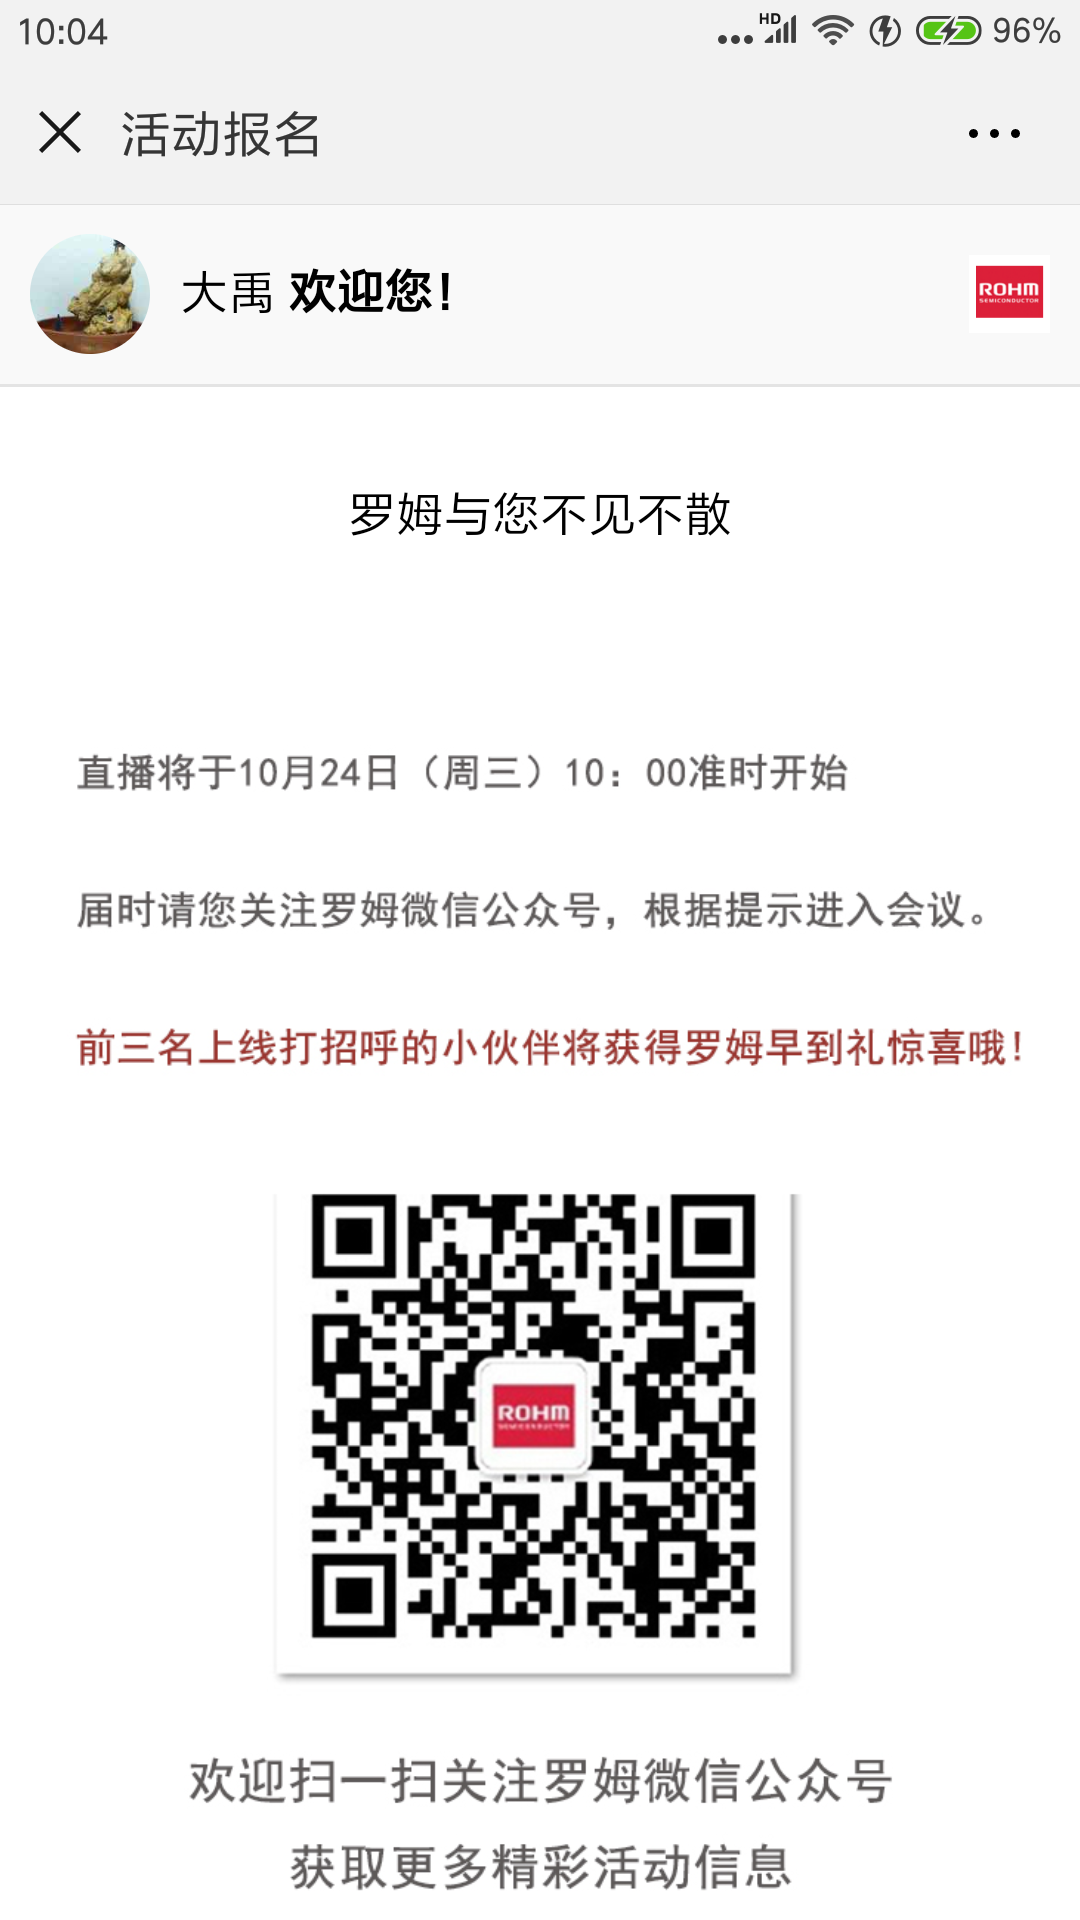 Screenshot_2018-09-27-10-04-34-838_com.tencent.mm.png